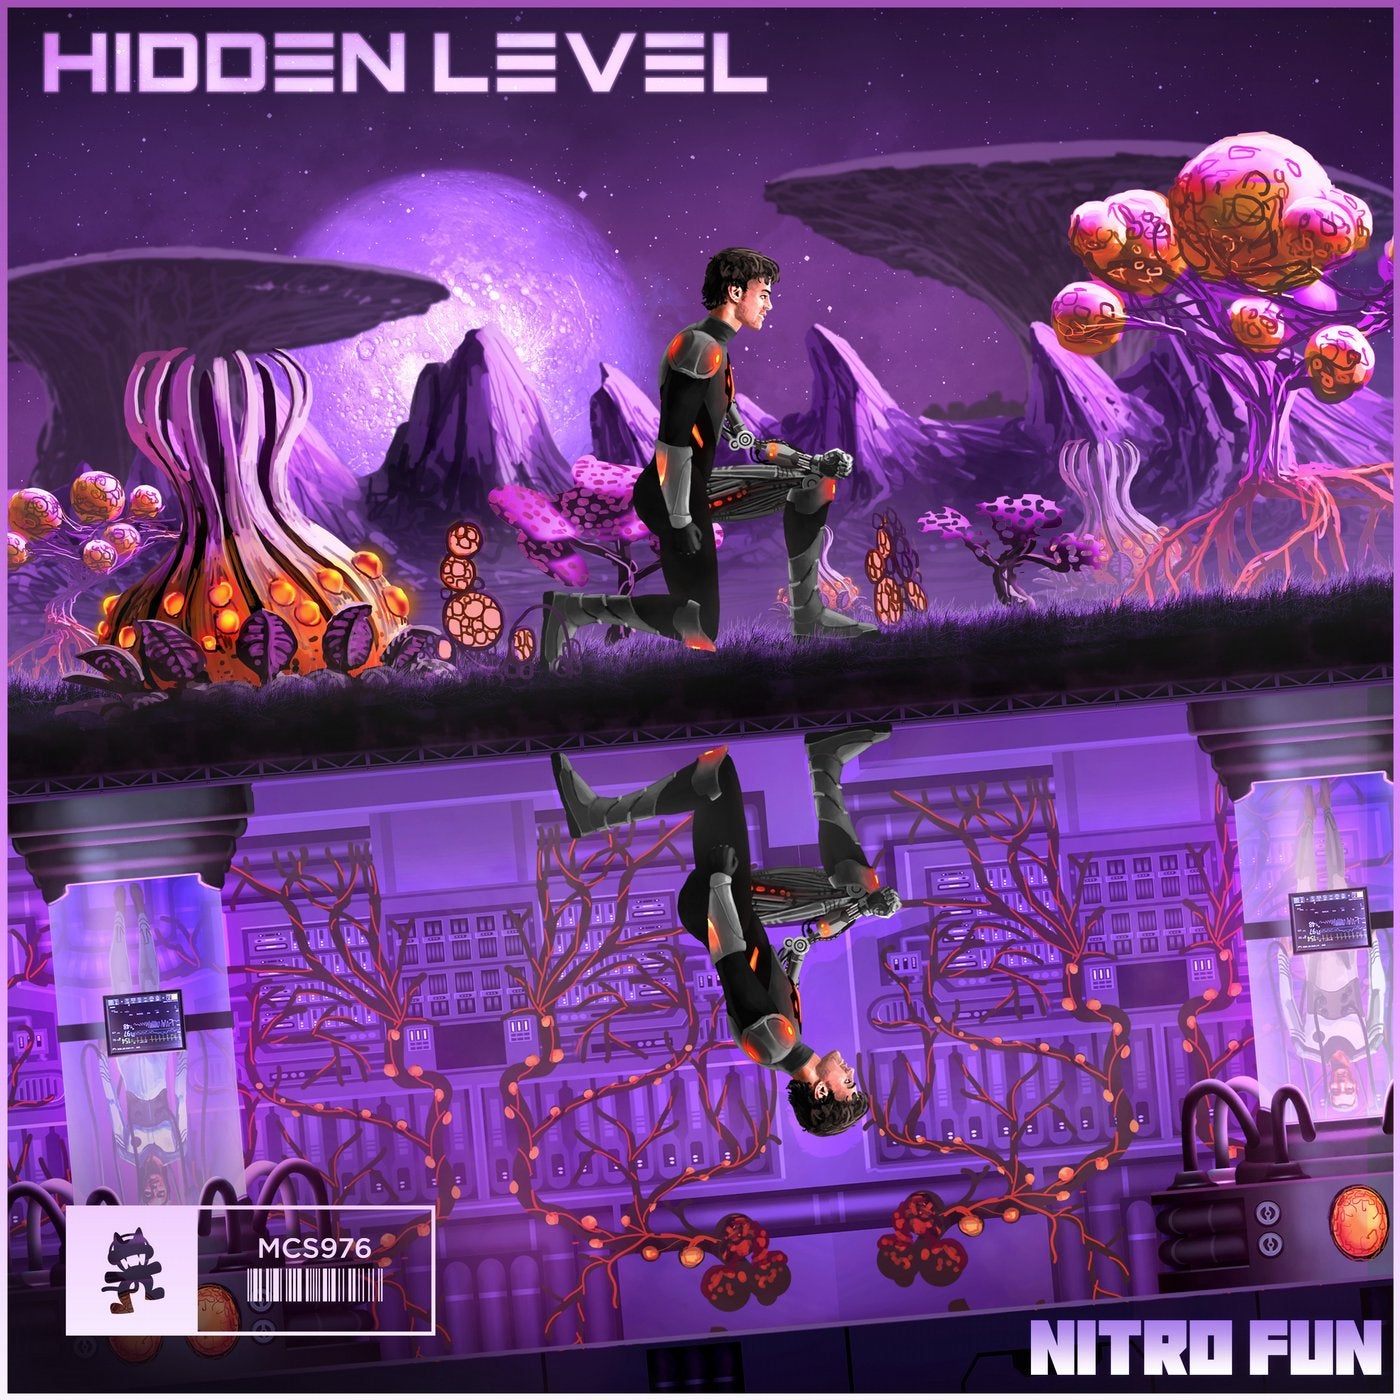 Hidden Level